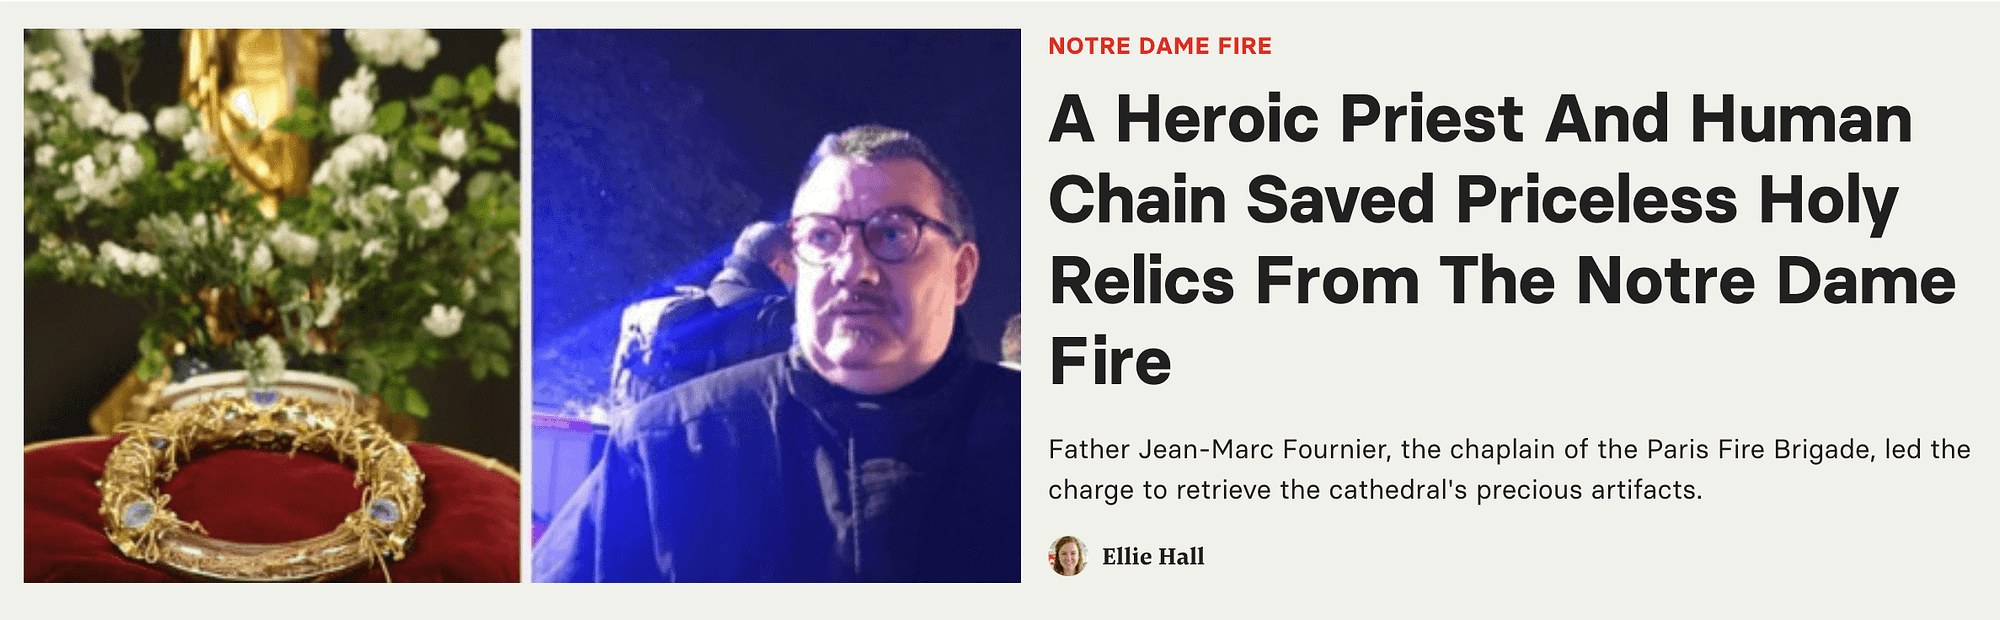 Заголовок сообщения в блоге о священнике, который спас реликвии от пожара в Нотр-Даме с помощью живых цепей.